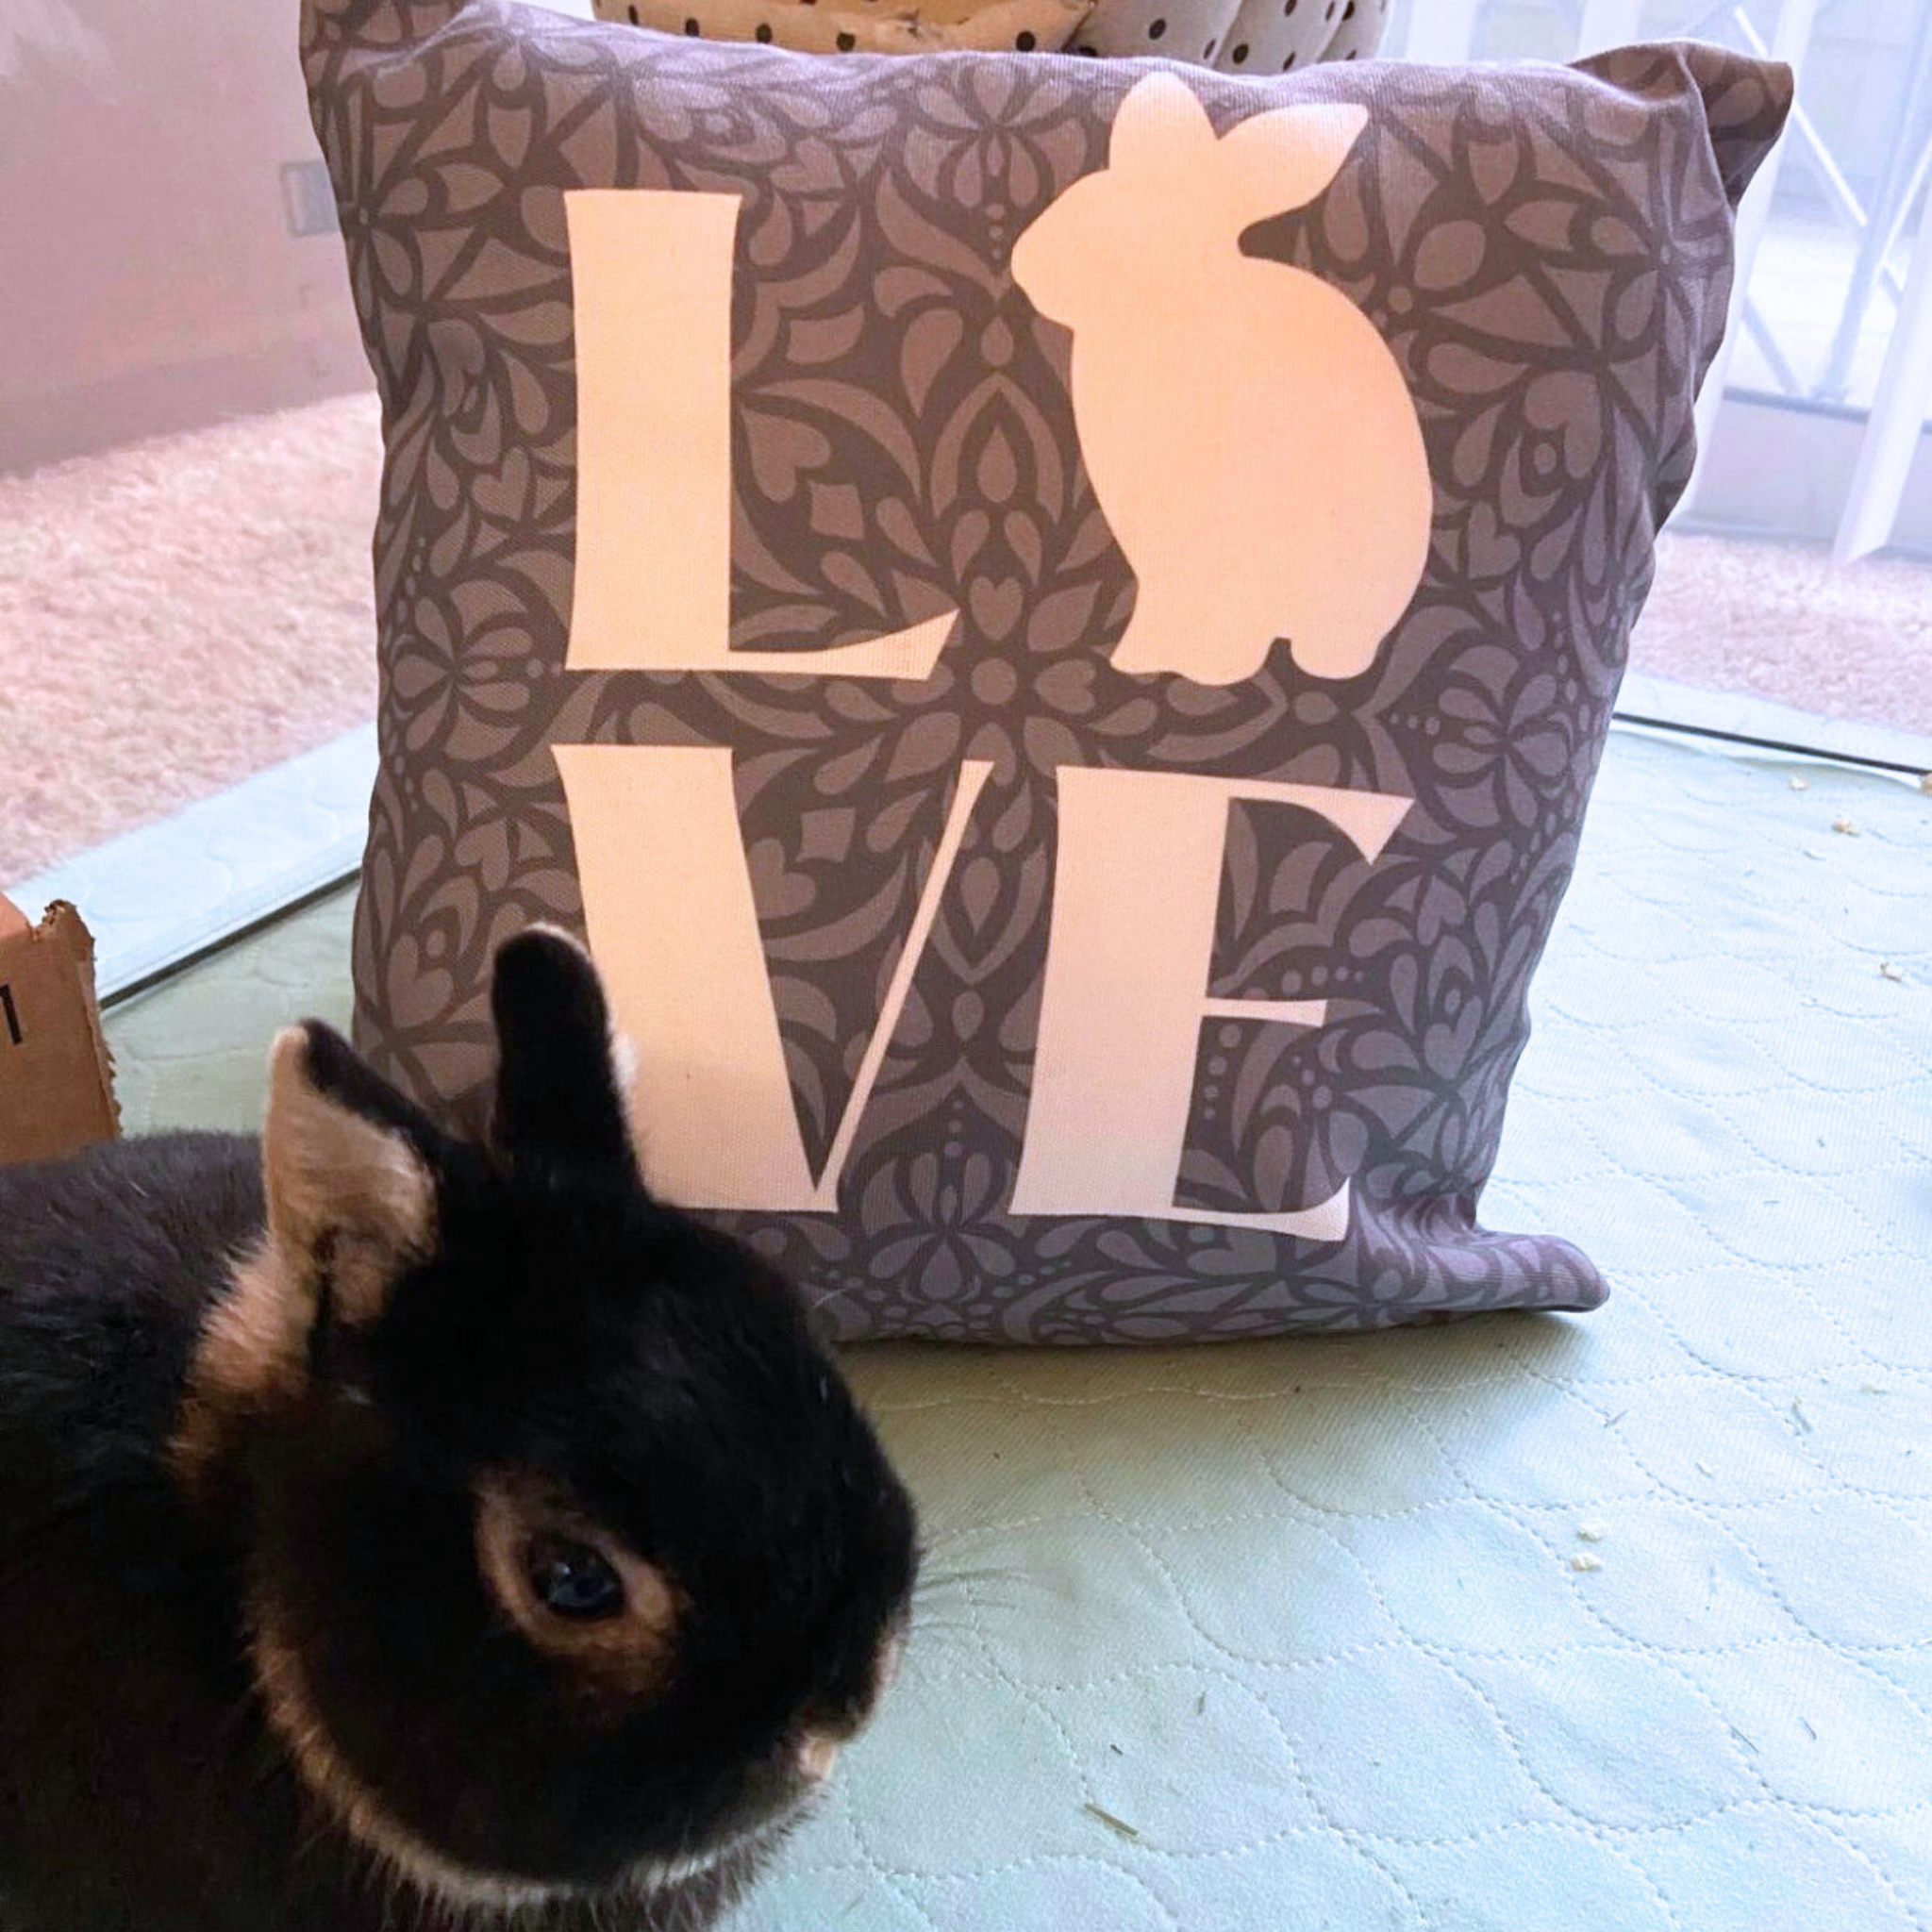 Rabbit LOVE Pillow